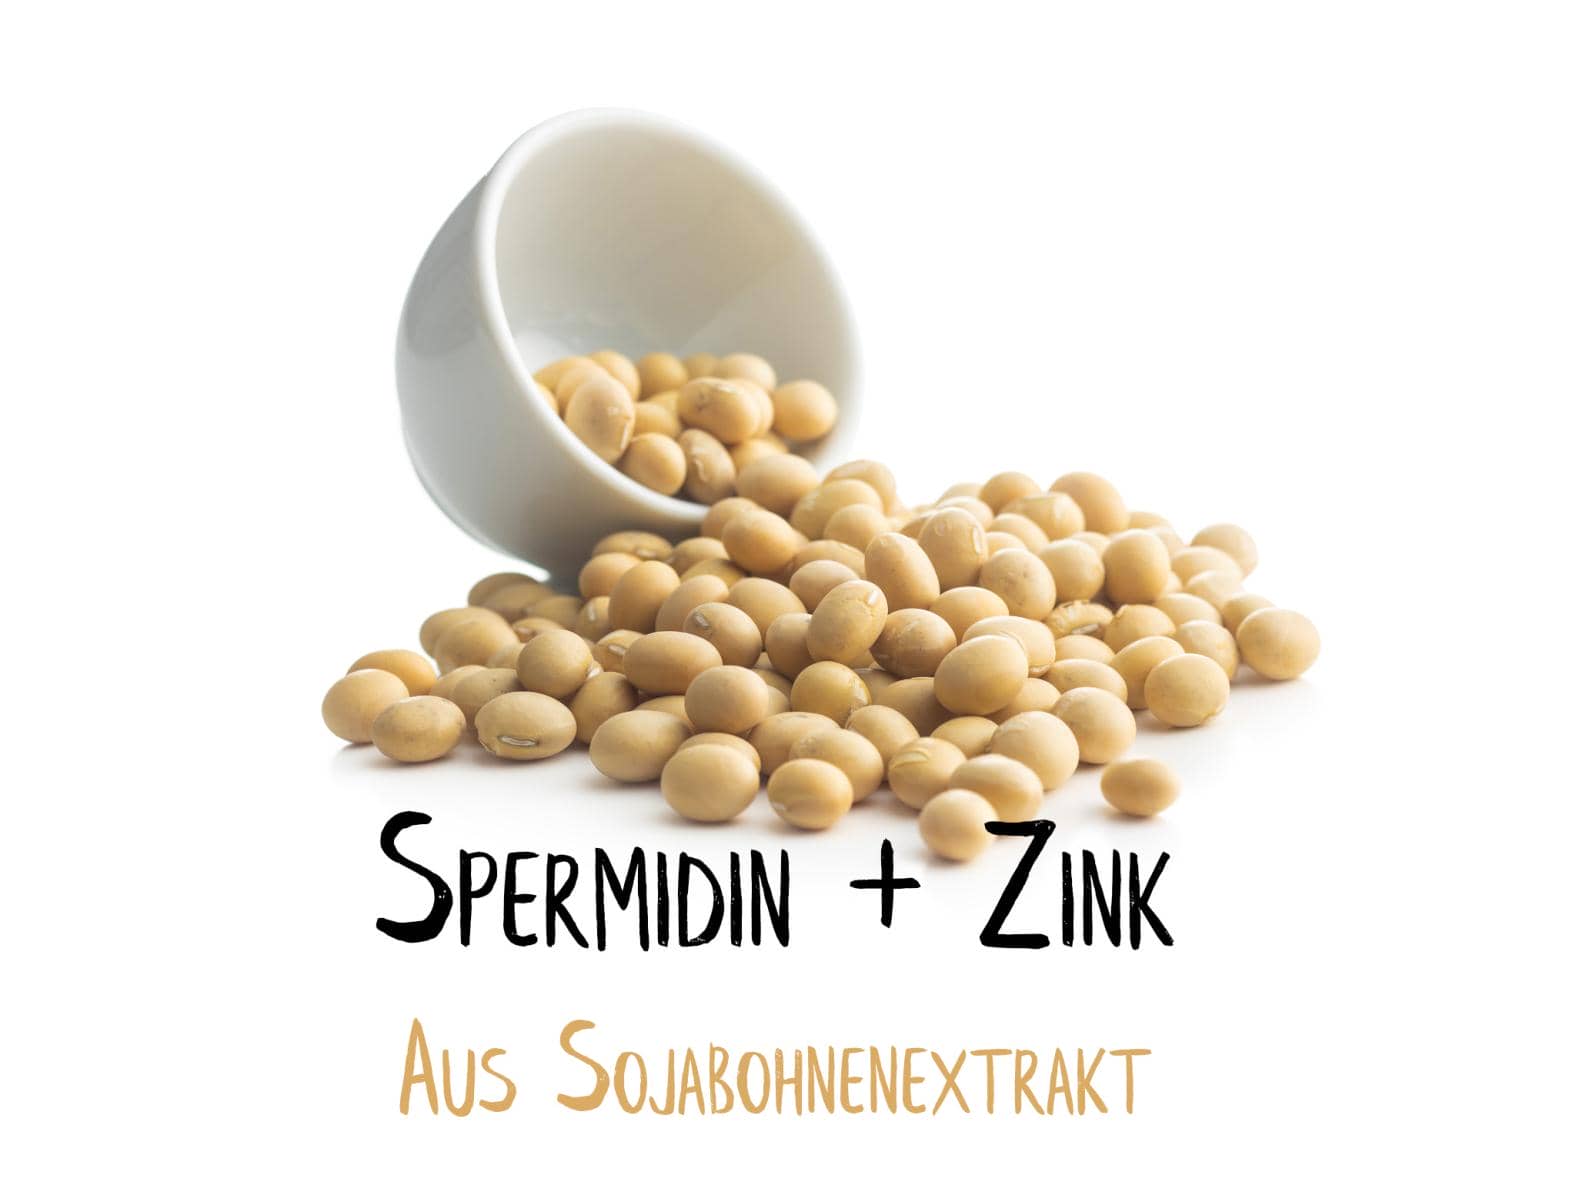 Spermidin + Zink 60 Kapseln - Aus Sojabohnenextrakt - Ausreichend für 1 Monat - Monoaminopropylputrescin